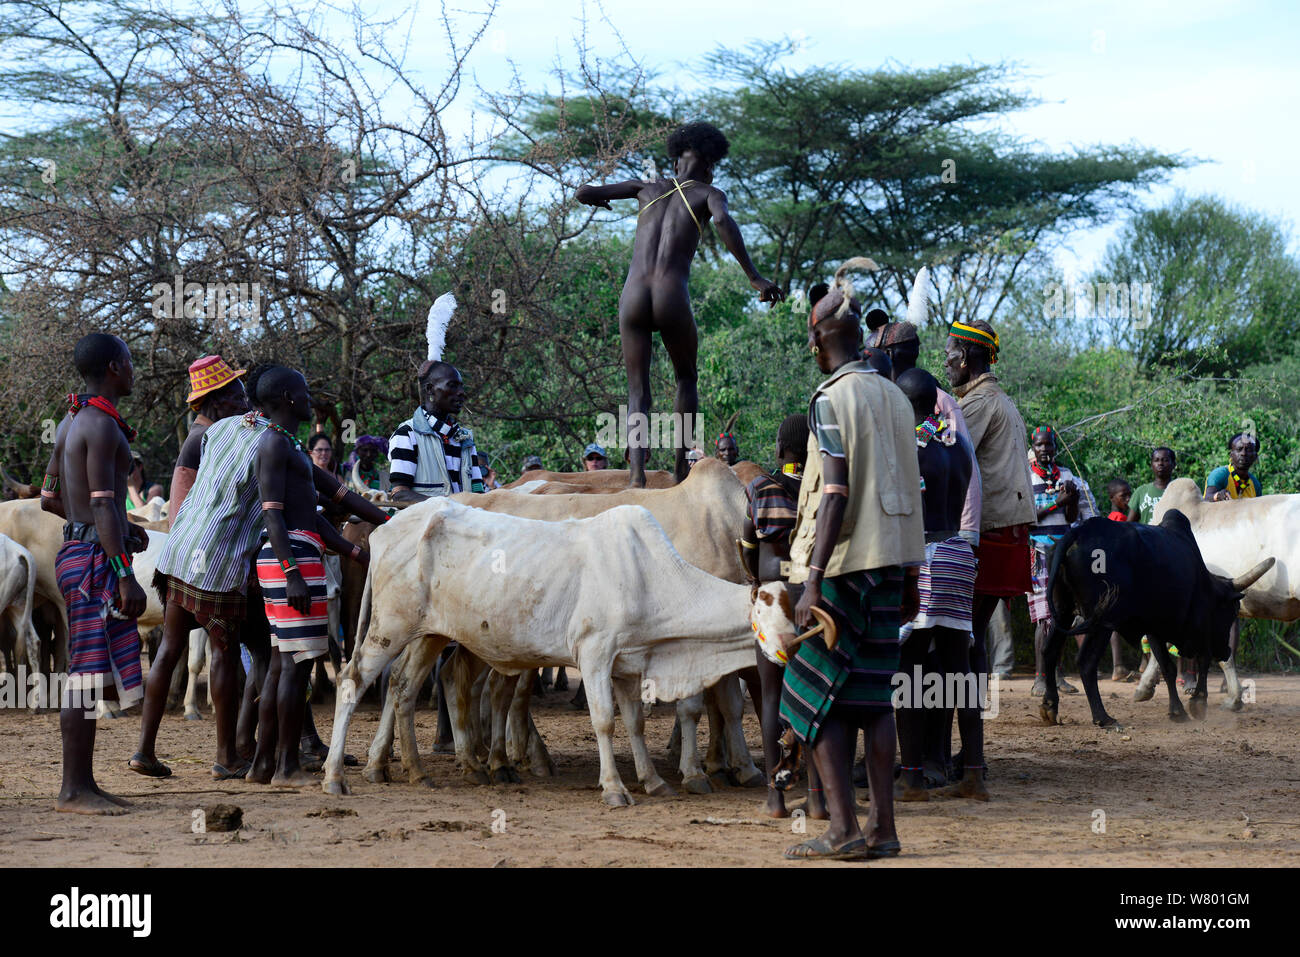 Relations sérieuses Hamer garçon sautant à travers la ligne des taureaux, dans le cadre du Jumping de taureaux cérémonie qui marque la transition vers l'âge adulte. L'Éthiopie, Novembre 2014 Banque D'Images